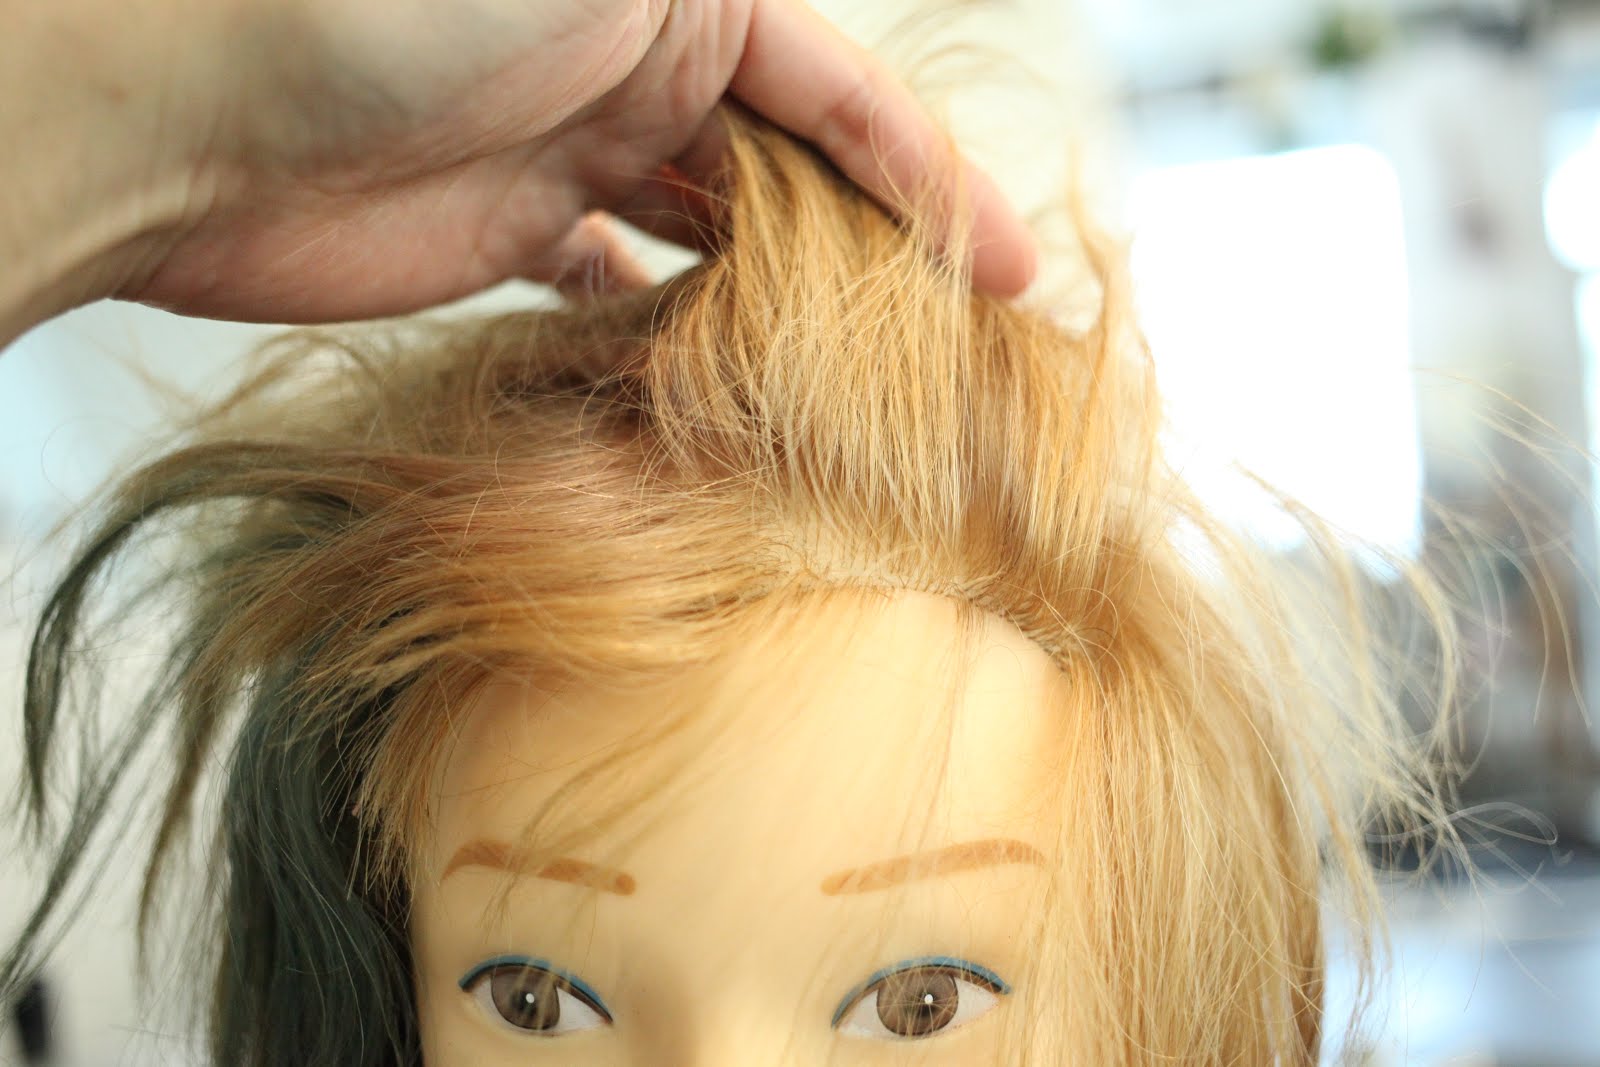 【Marianastyle】 美容師が教える、正しい前髪のセットの仕方（アイロン使って流す女子編）